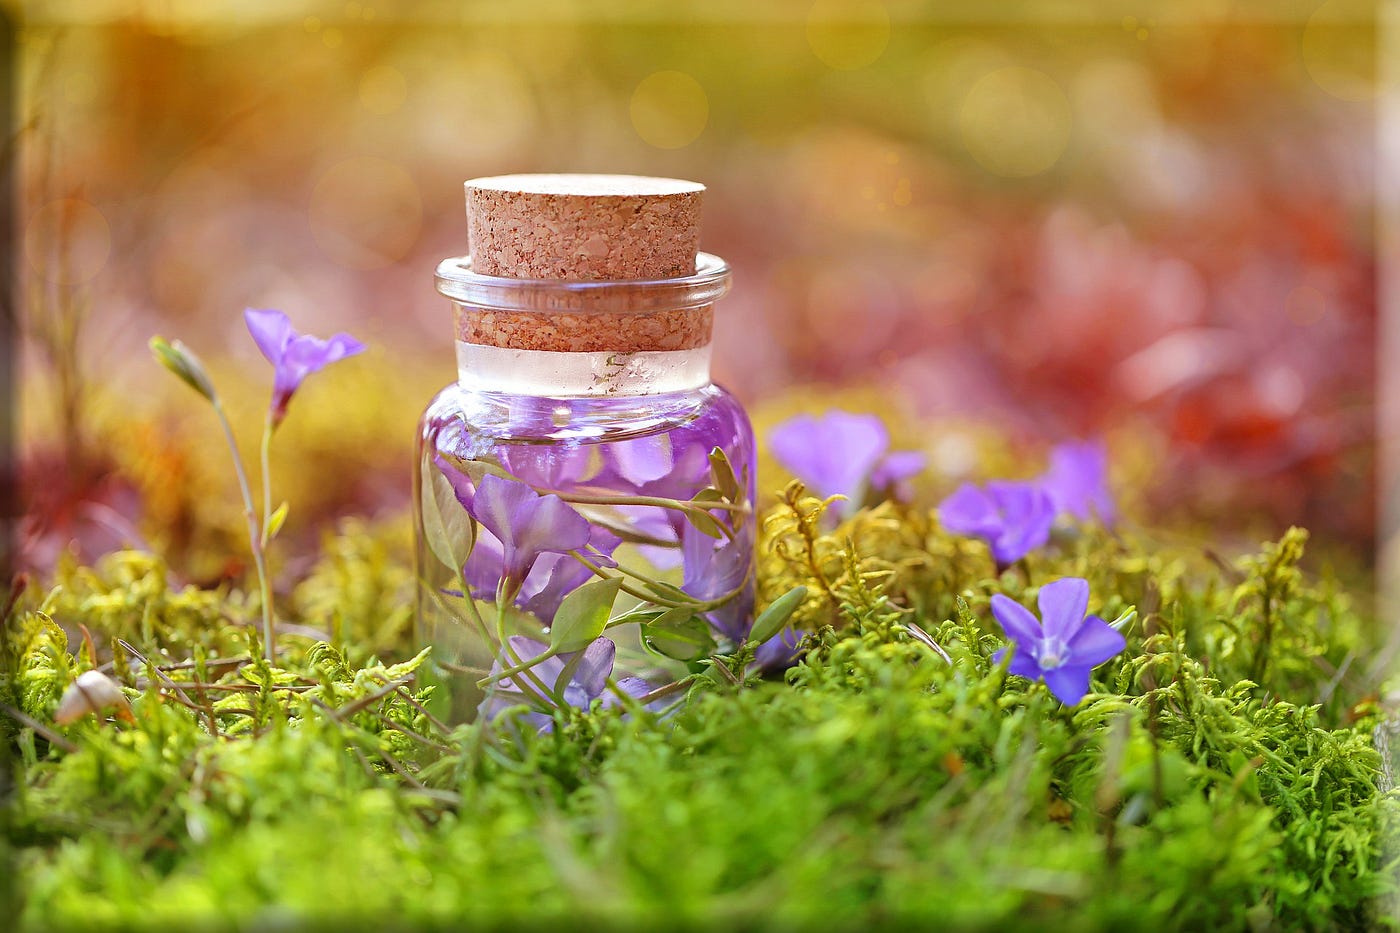 Flowers in a bottle in a field of purple blossoms